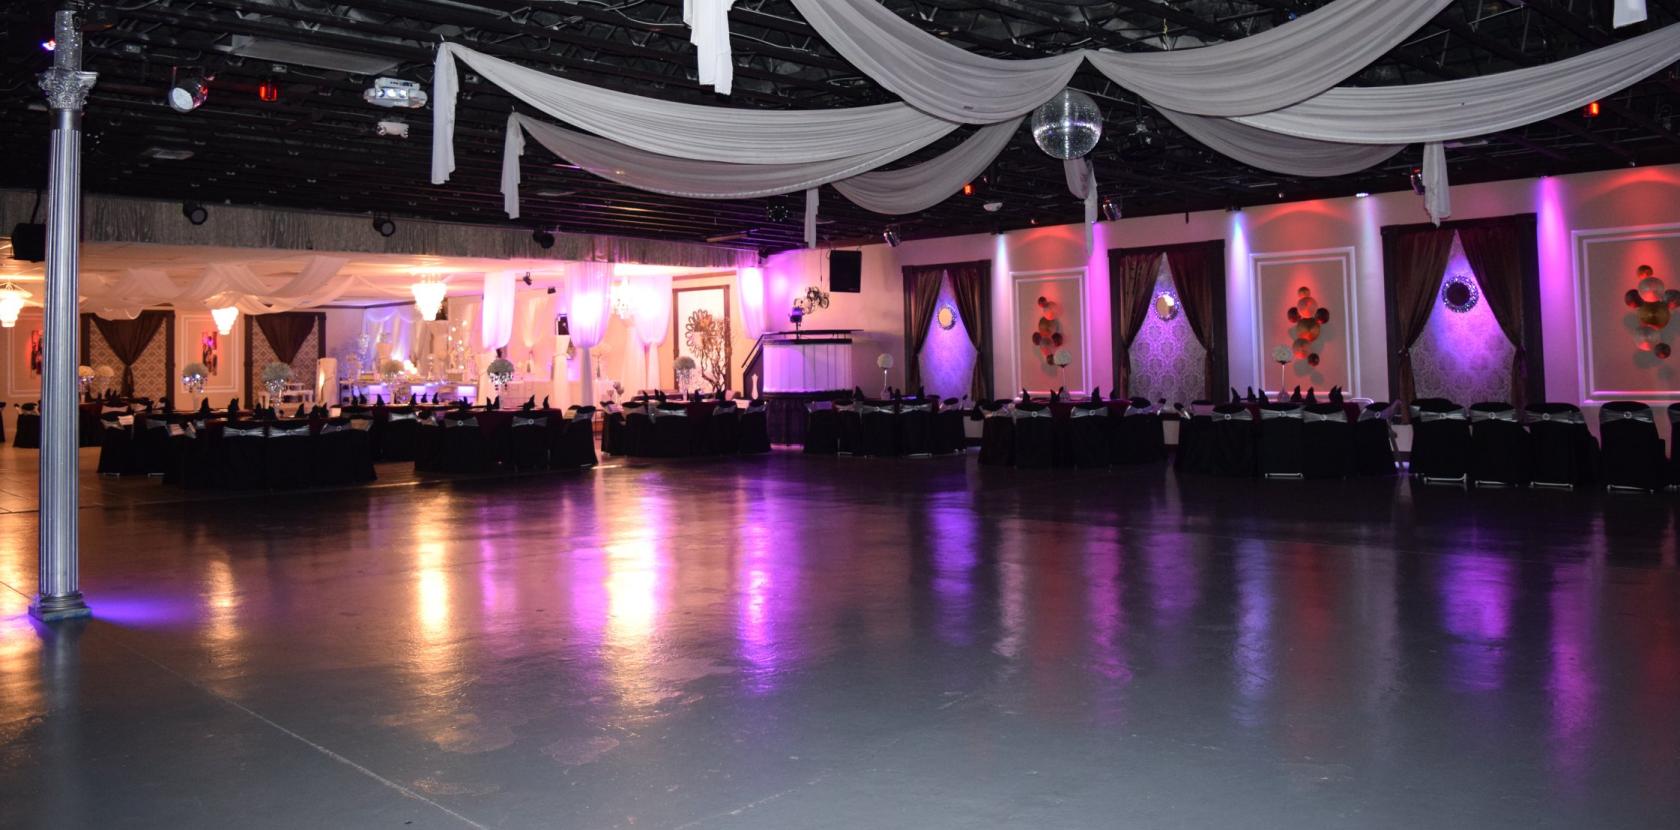 Event Room - La Onda Banquet Hall #1 - Event Venue Rental - Tagvenue.com